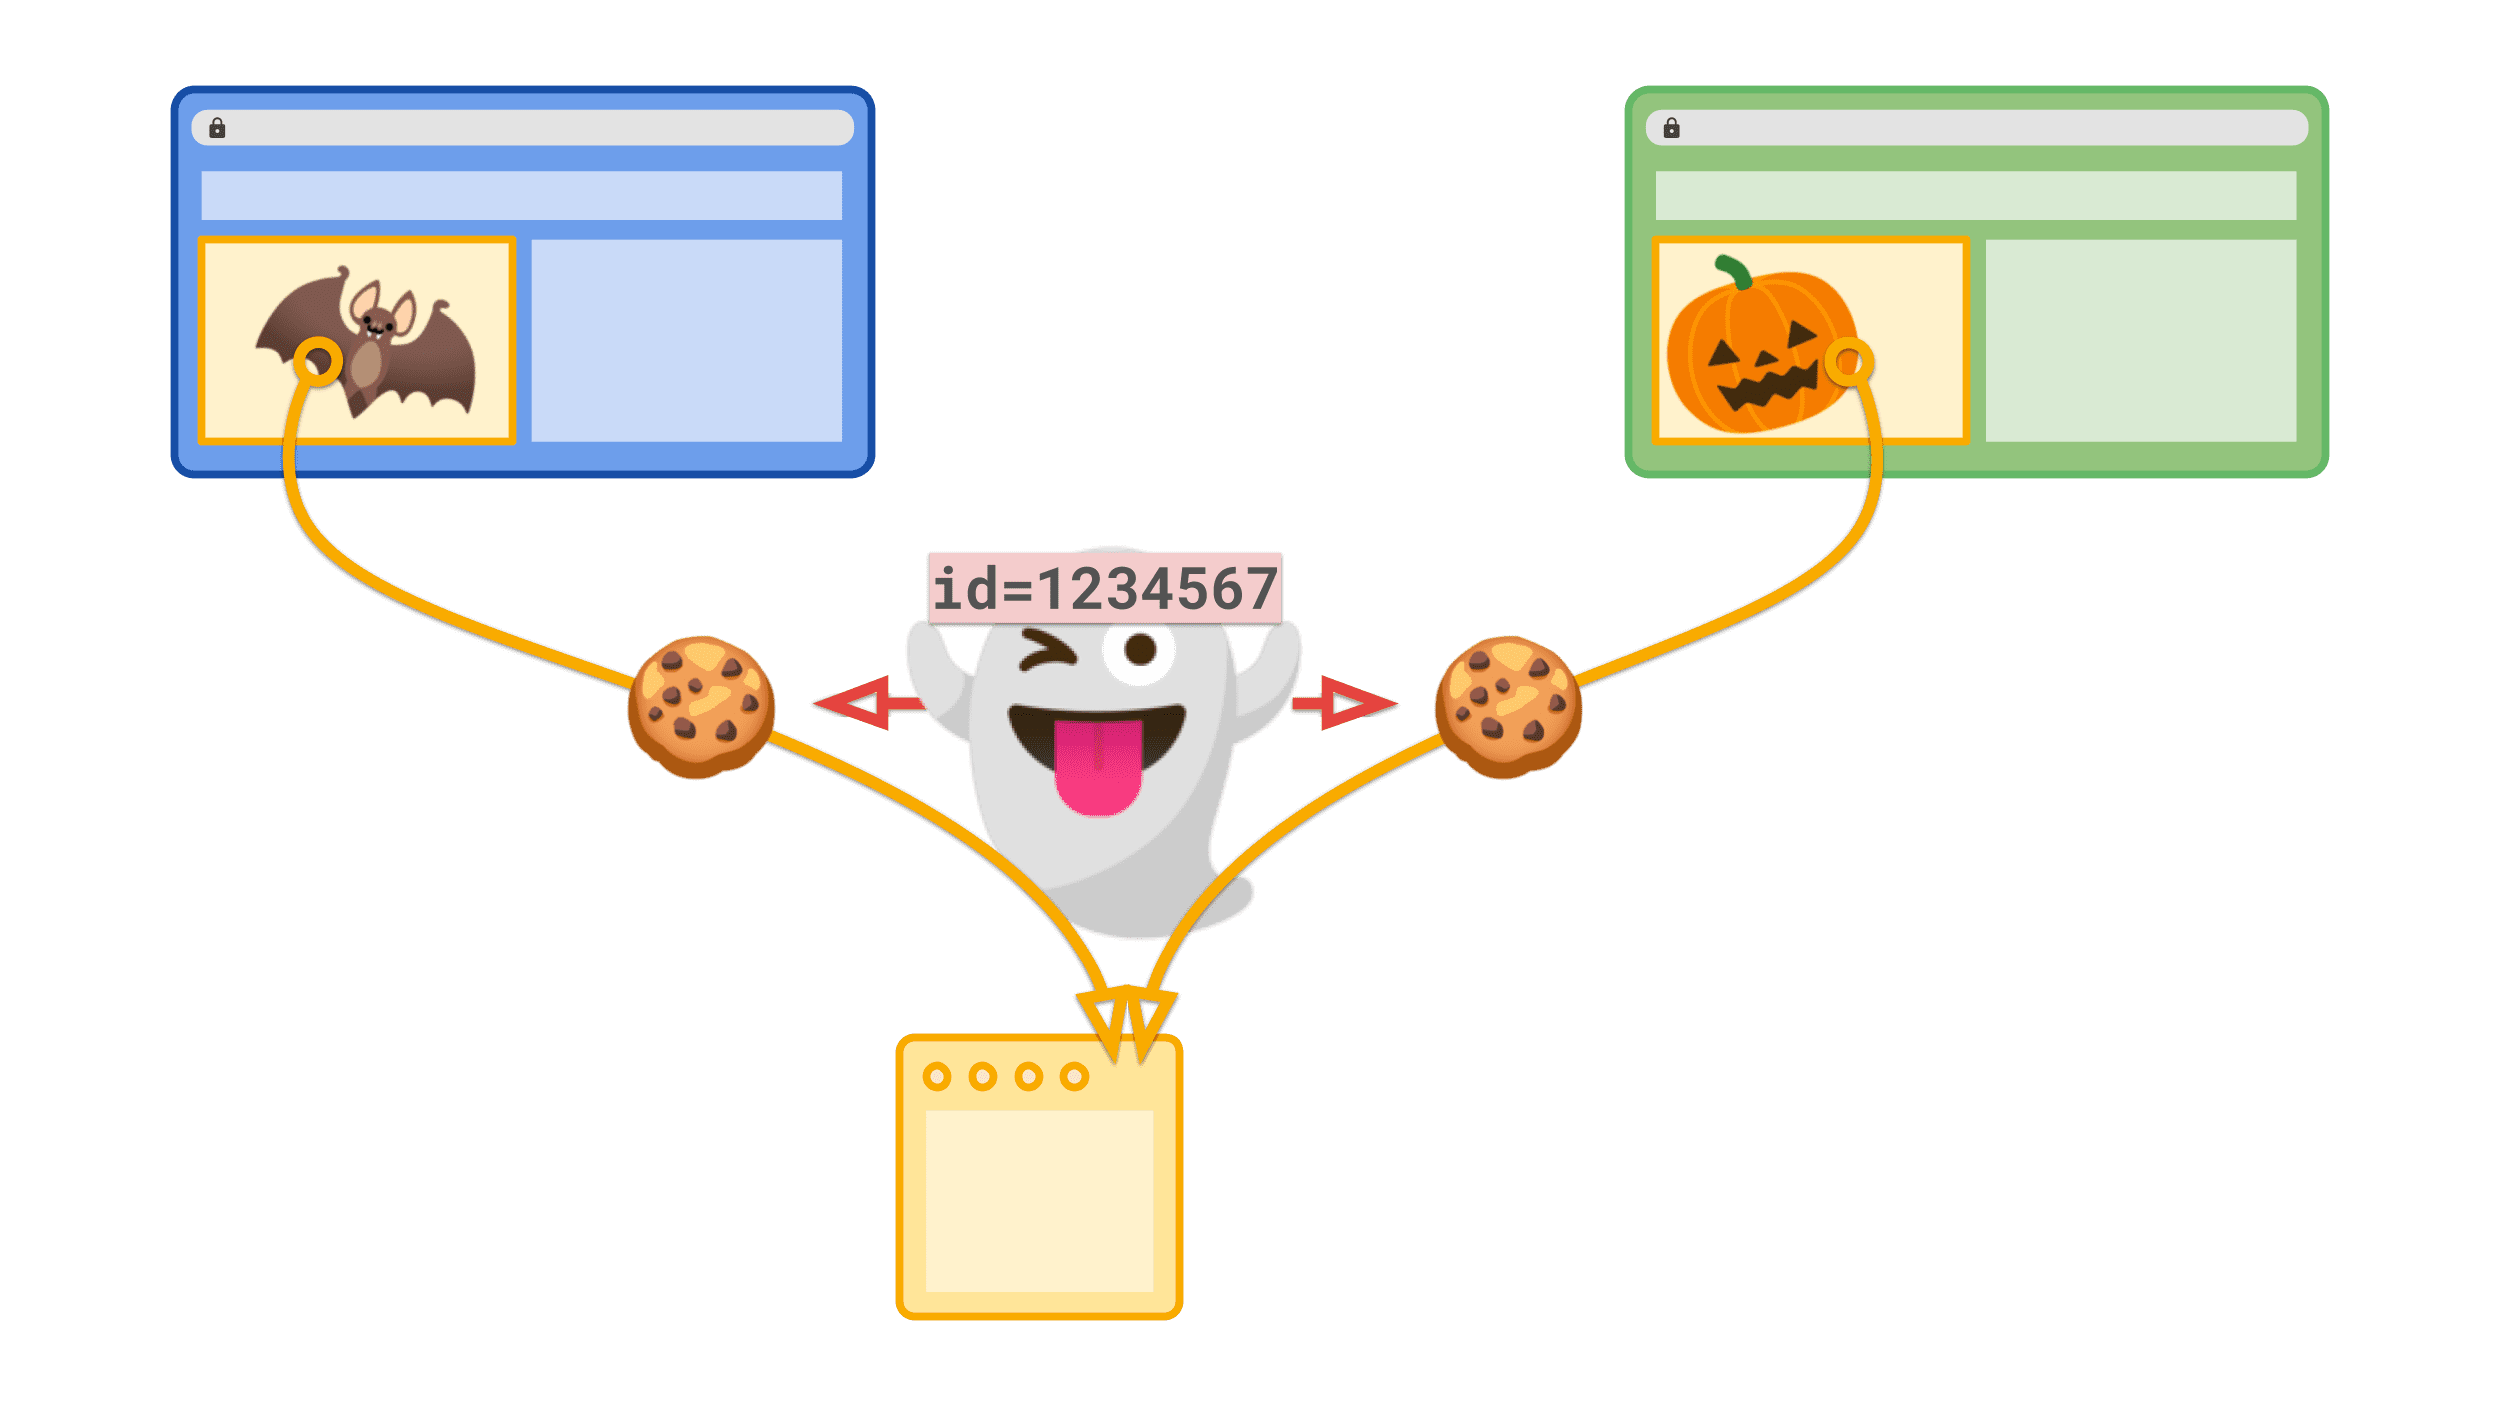 Ein Drittanbieter-Cookie mit einer eindeutigen ID, mit der die Drittanbieter-Website einen Nutzer im Web verfolgen kann